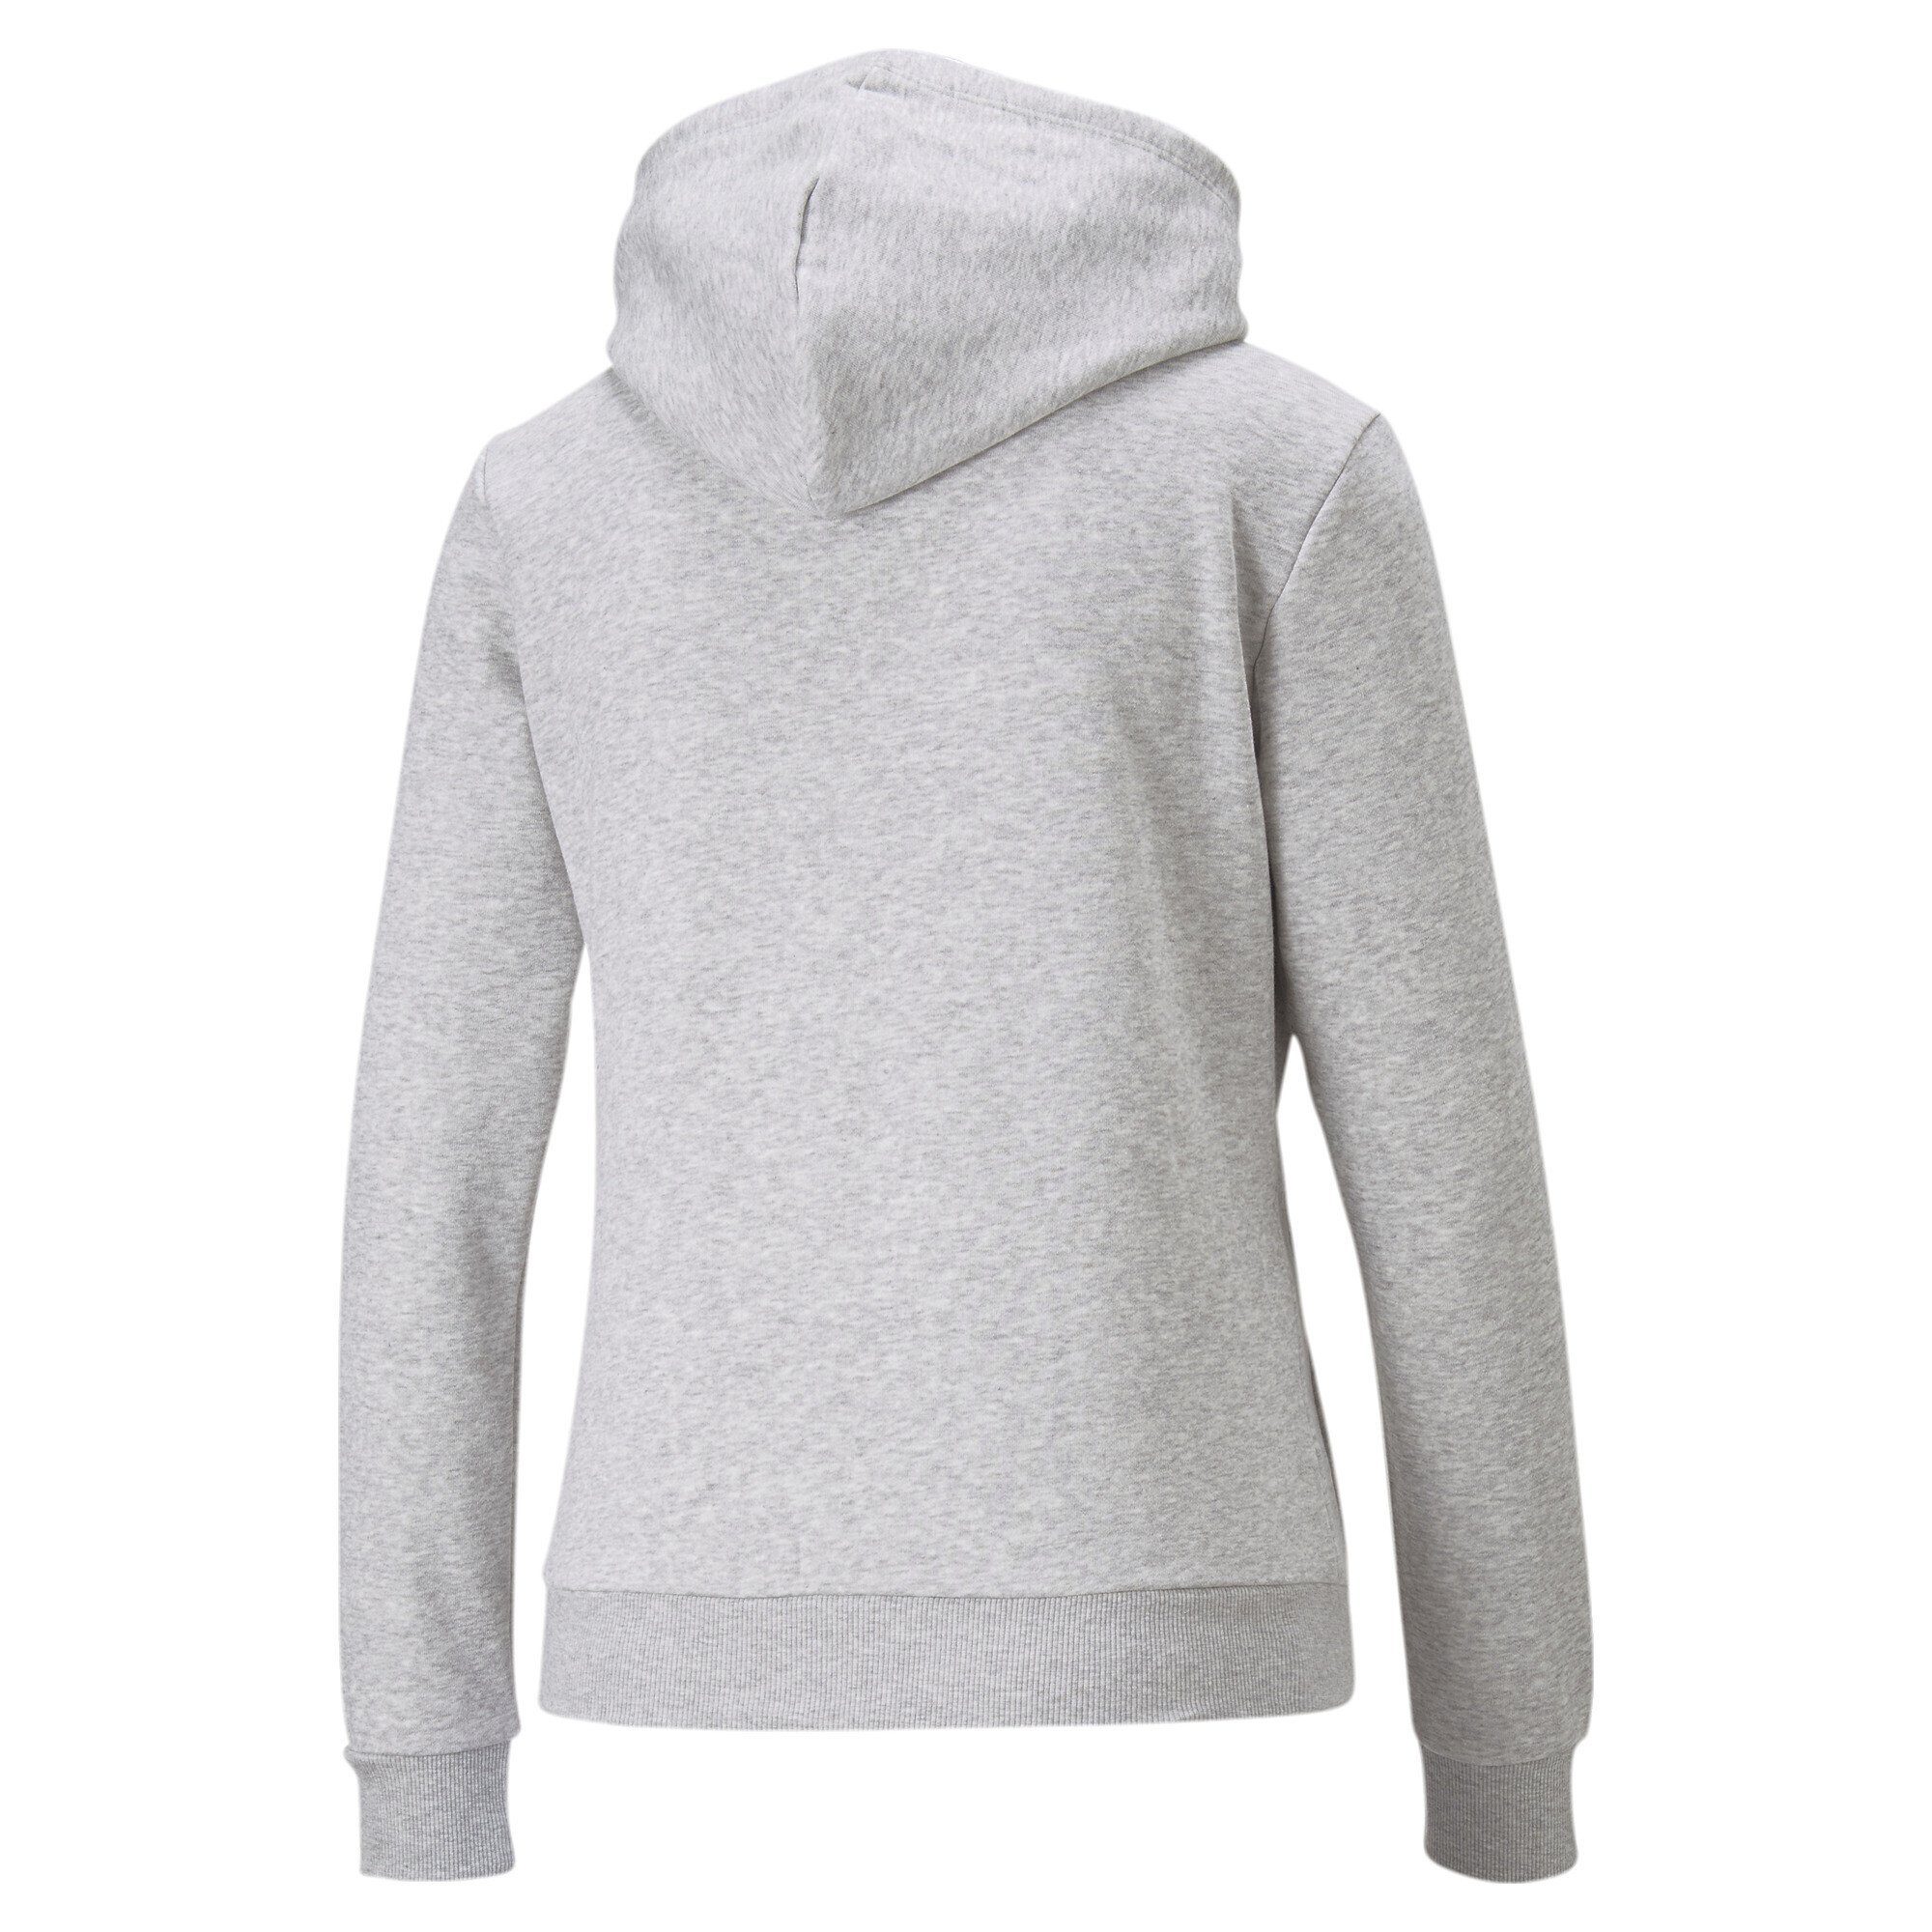 PUMA Sweatshirt Essentials Hoodie in voller Länge mit durchgehendem,  Integriert in PUMAs Sportswear-DNA